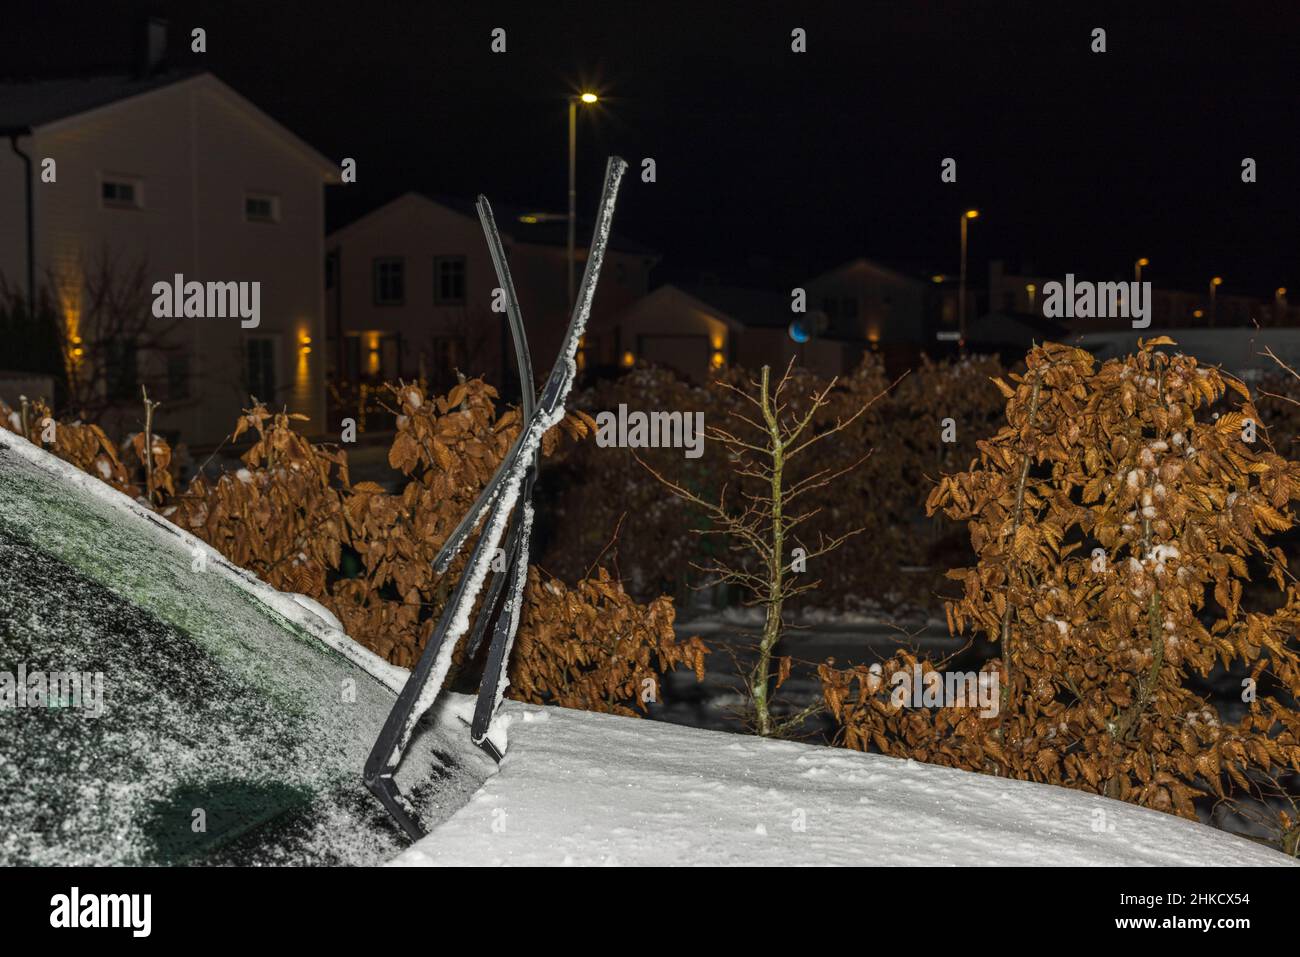 Vue de la voiture gelée avec les essuie-glaces surélevés pendant la nuit hivernale. Suède. Banque D'Images